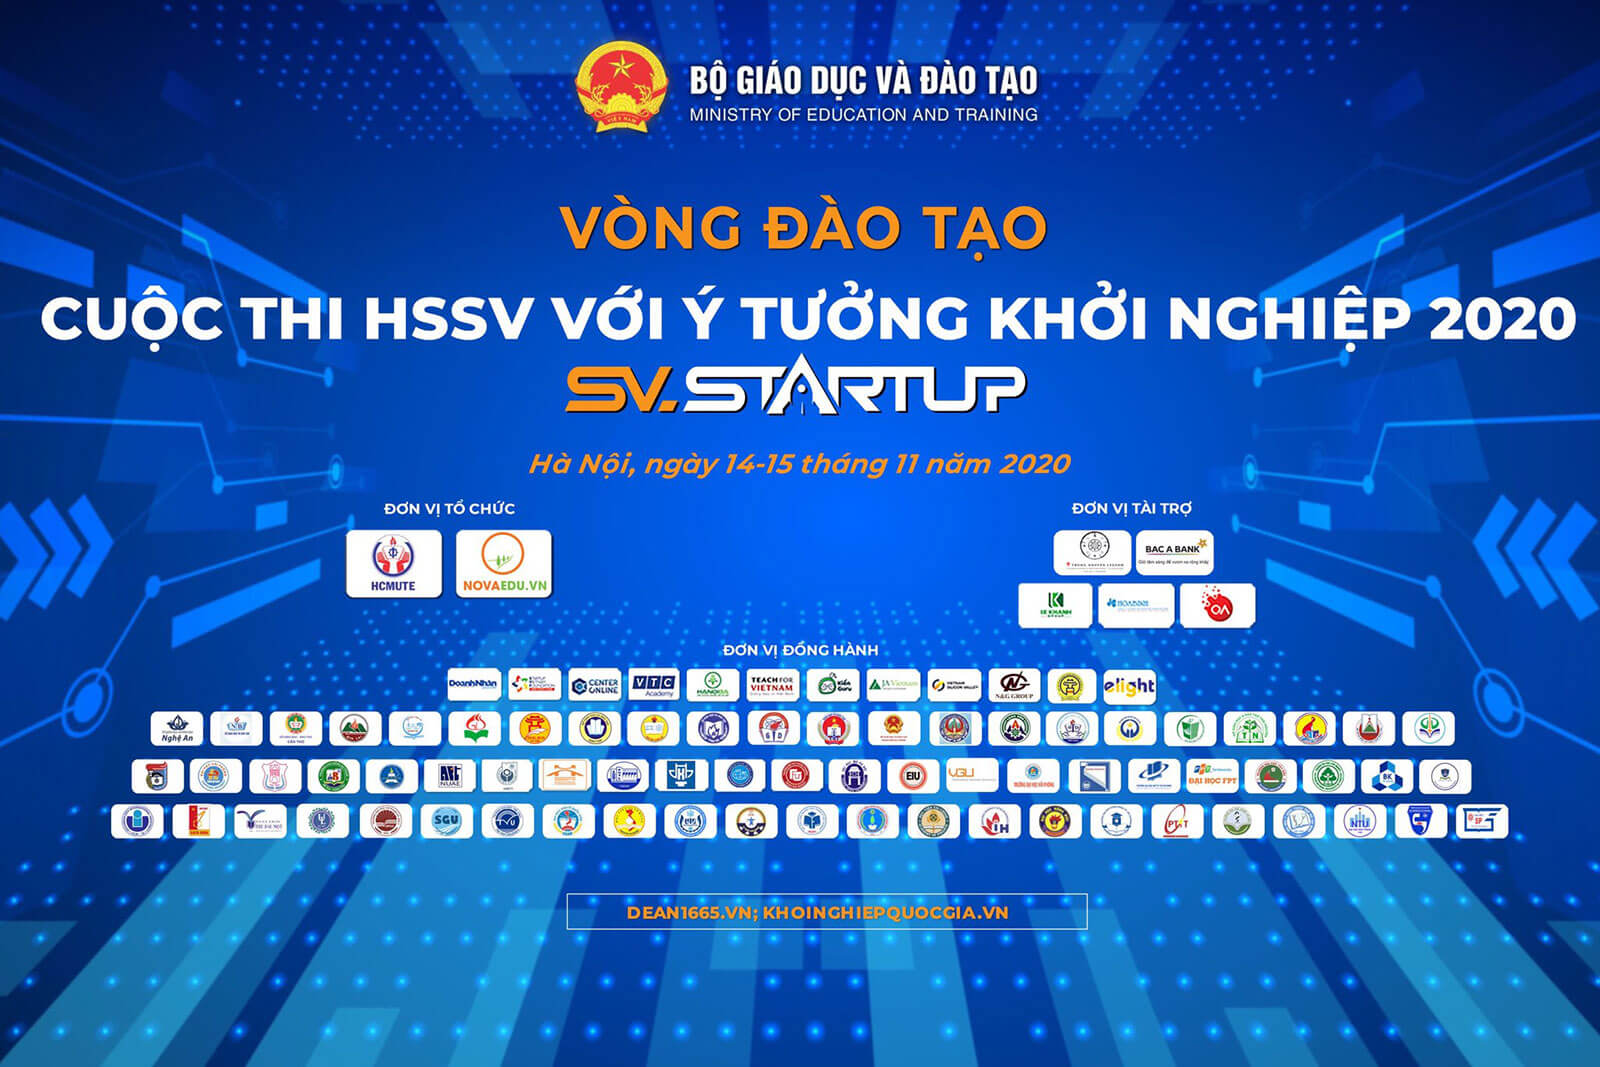 Bộ GD&ĐT tổ chức vòng Đào tạo cuộc thi “Học sinh, sinh viên với ý tưởng khởi nghiệp” tại VTC Academy Hà Nội